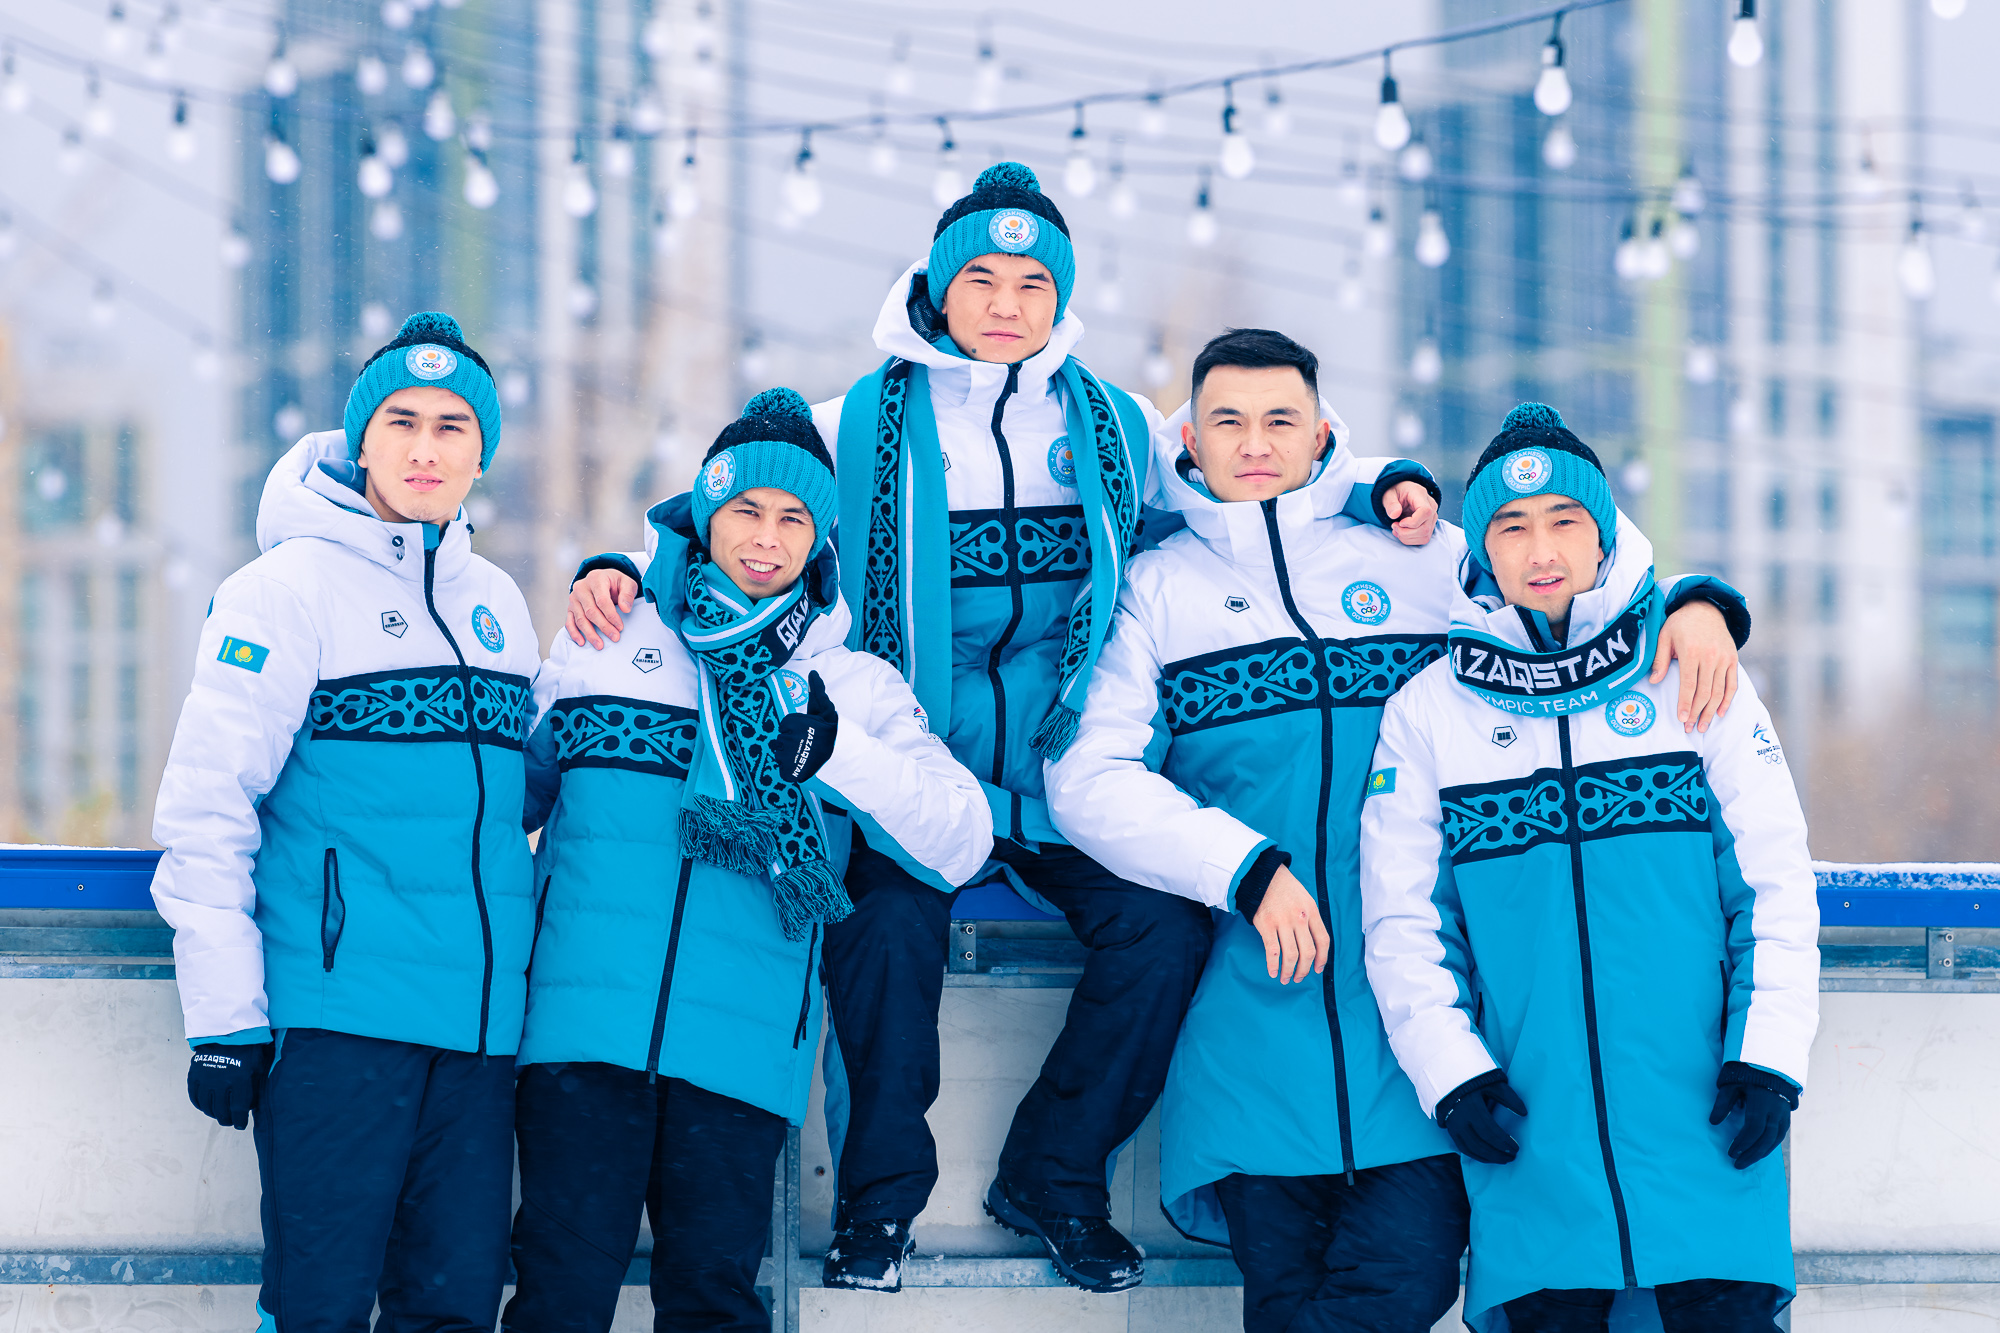 Уральский дизайнер Дмитрий Шишкин создал олимпийскую форму для сборной Казахстана